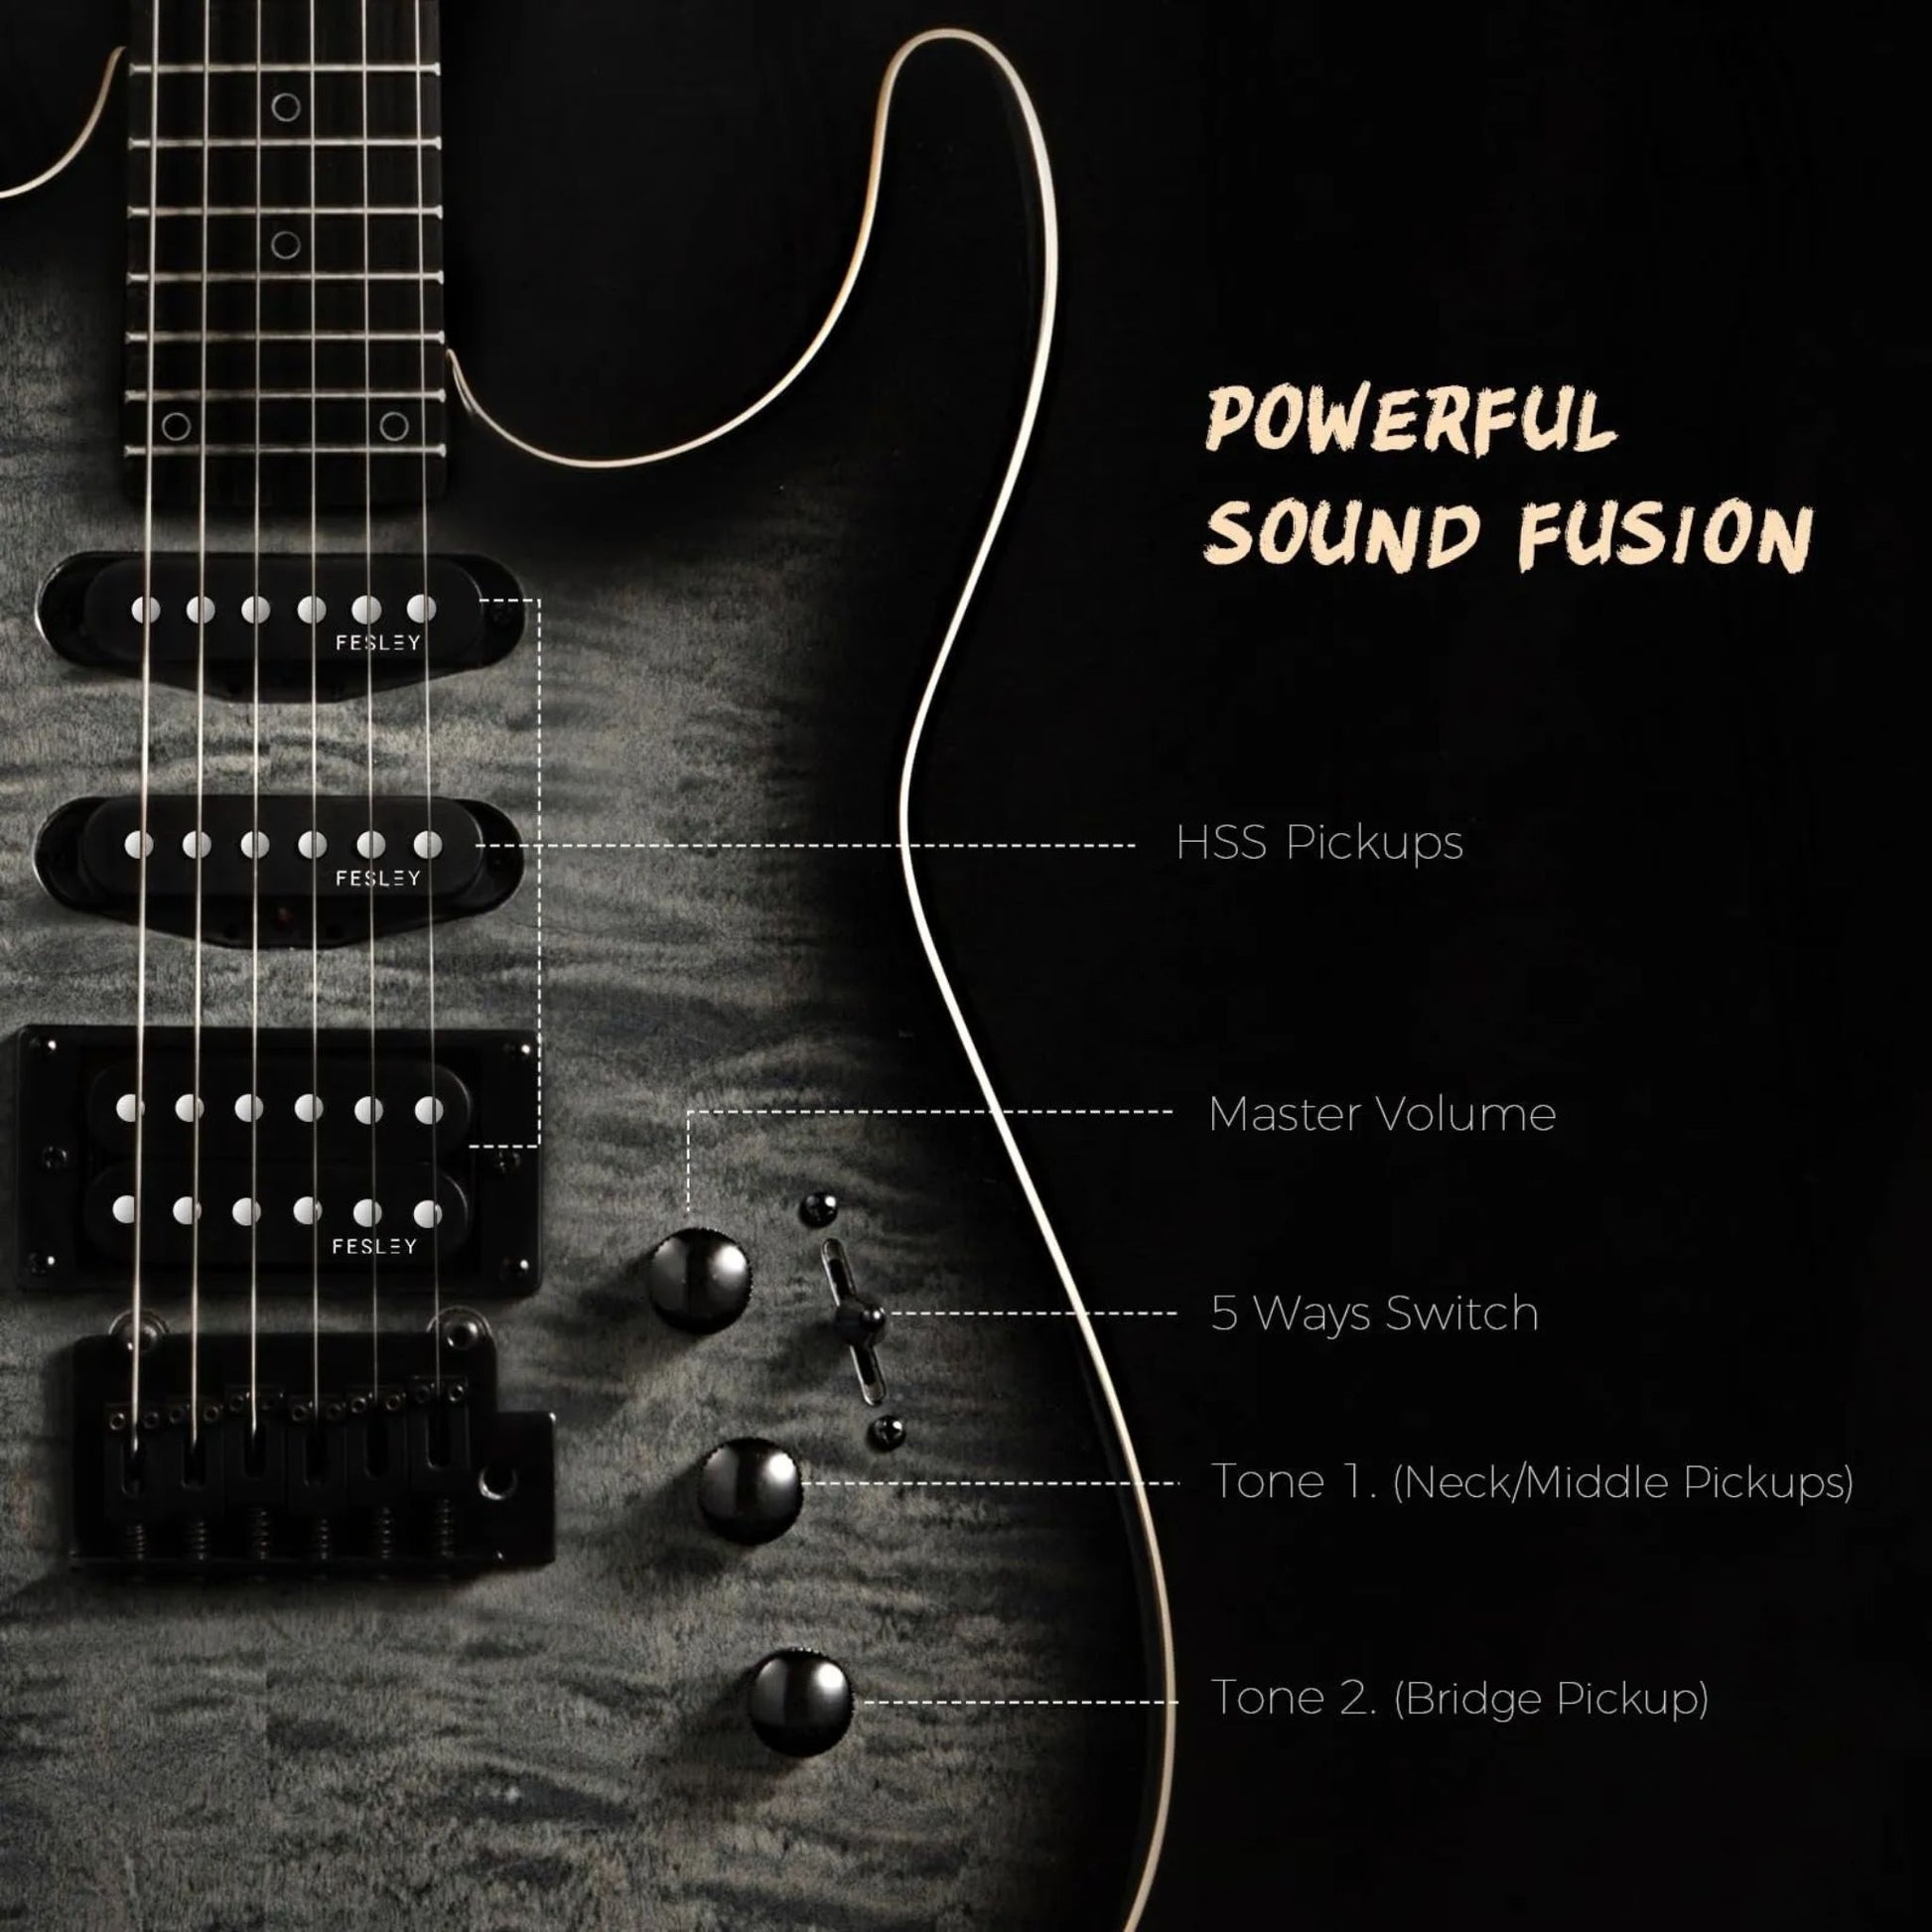 Đàn Guitar Điện Fesley FDK800 HSS, Mixed Fingerboard - Việt Music